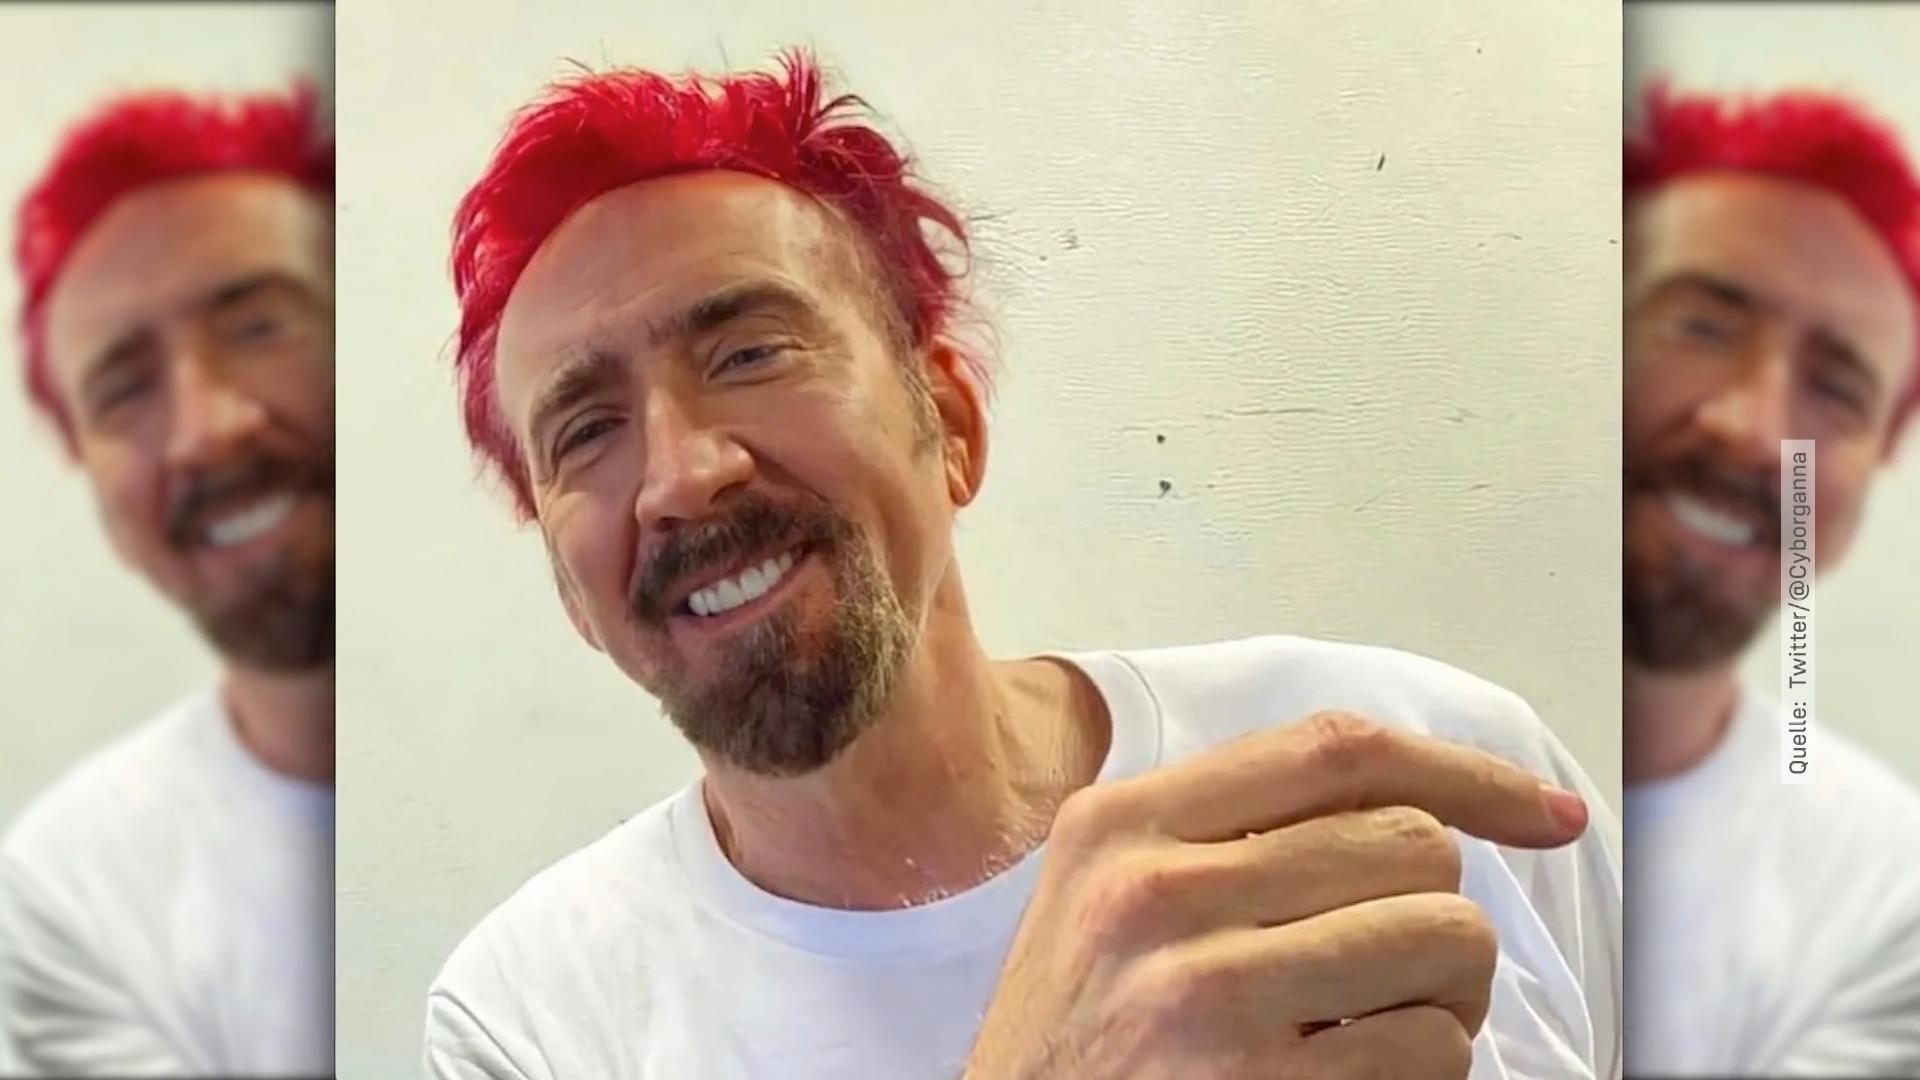 Nicolas Cage hat nun knallrote Haare Fans feiern Typveränderung